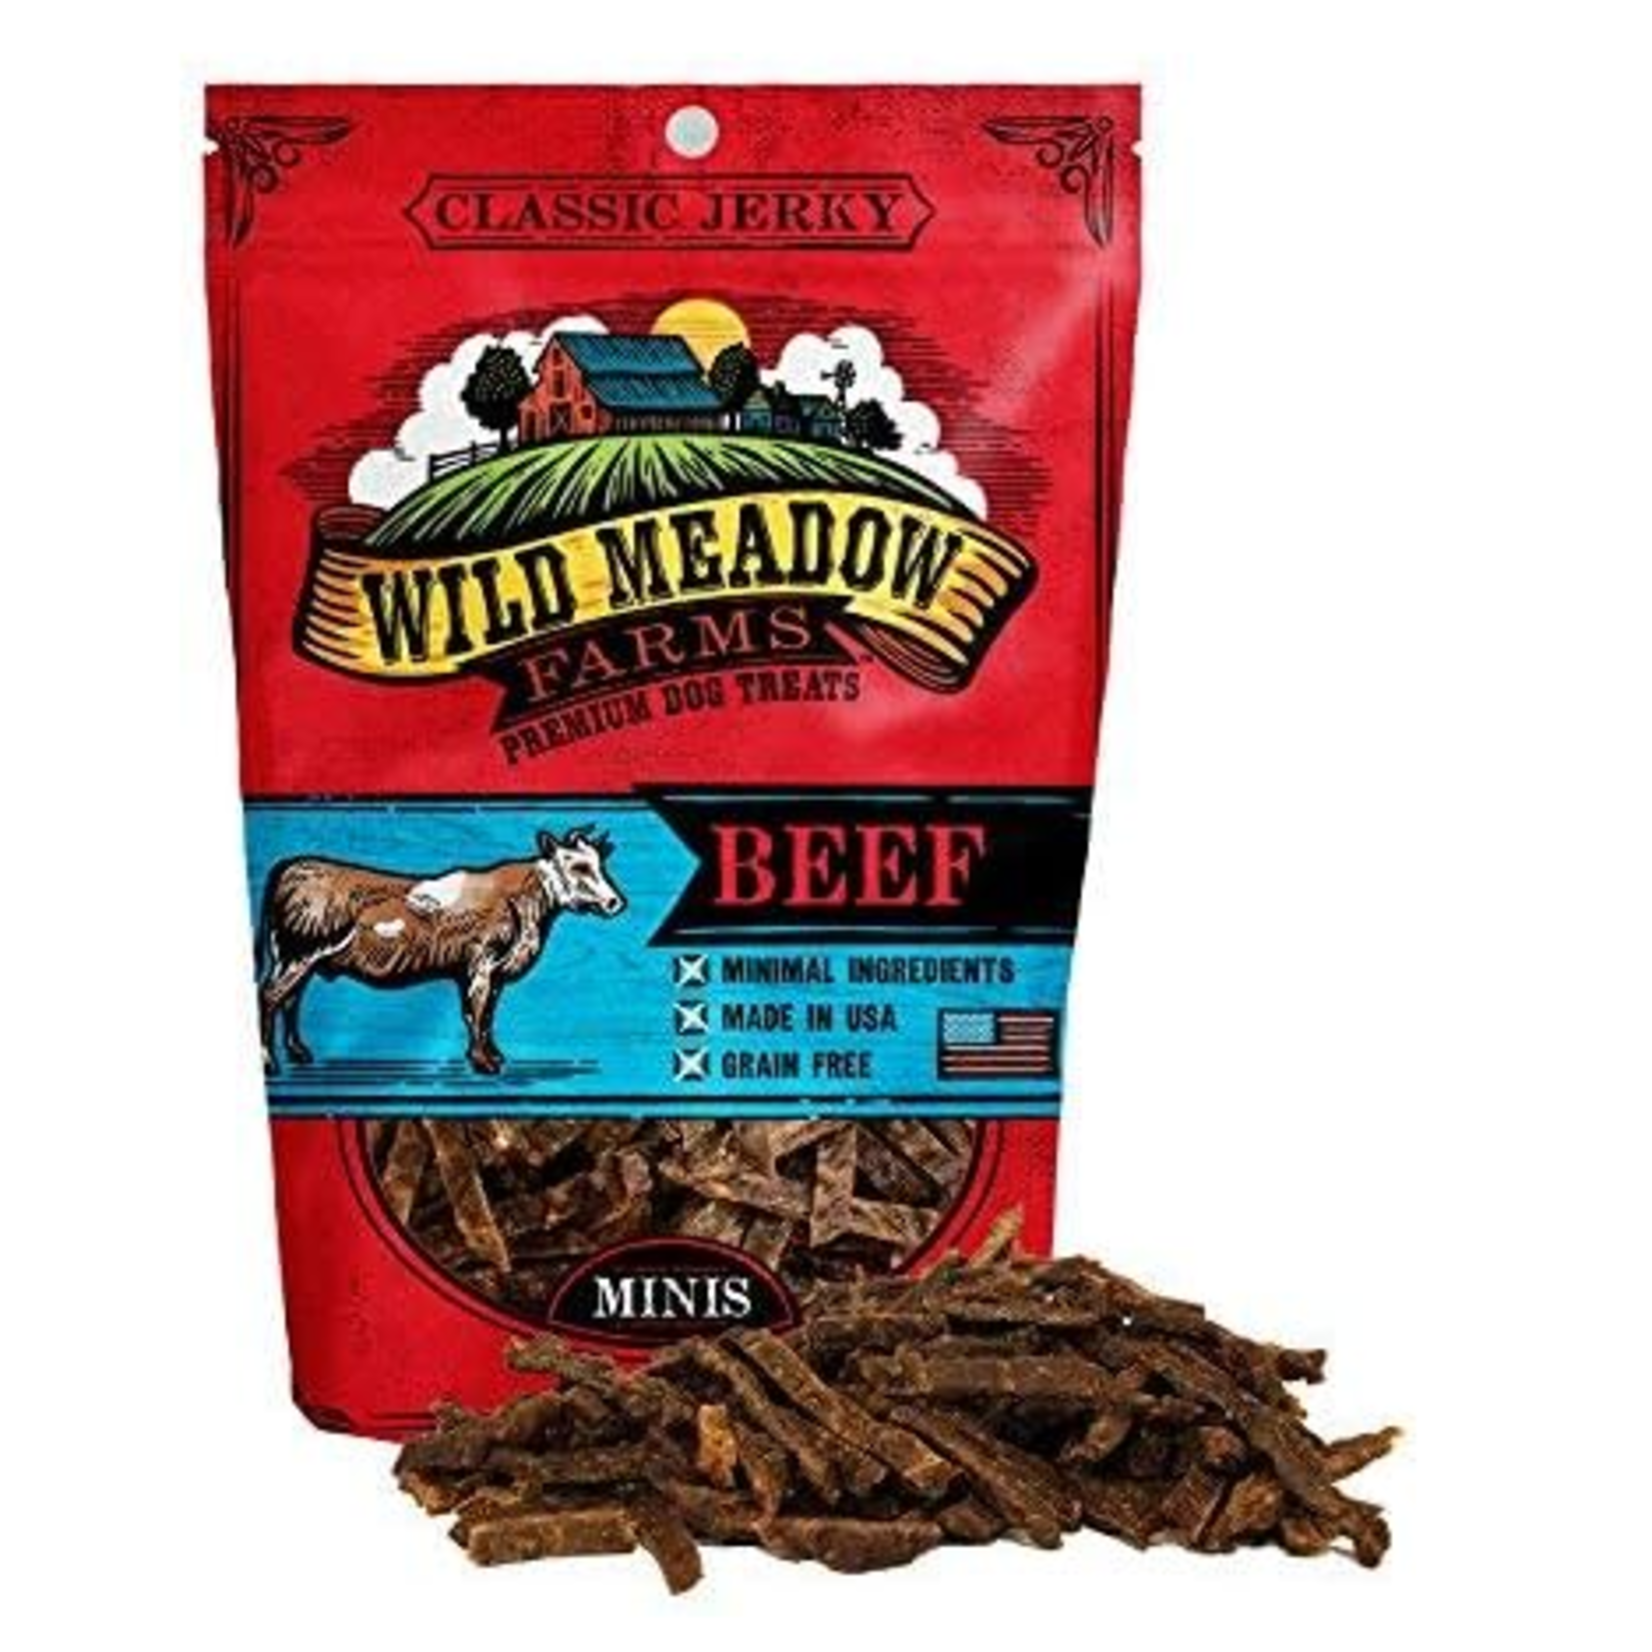 Wild Meadow Farms 3.5 oz. - Beef - Classic Minis - Semi-Soft Dog Treat - Wild Meadow Farms